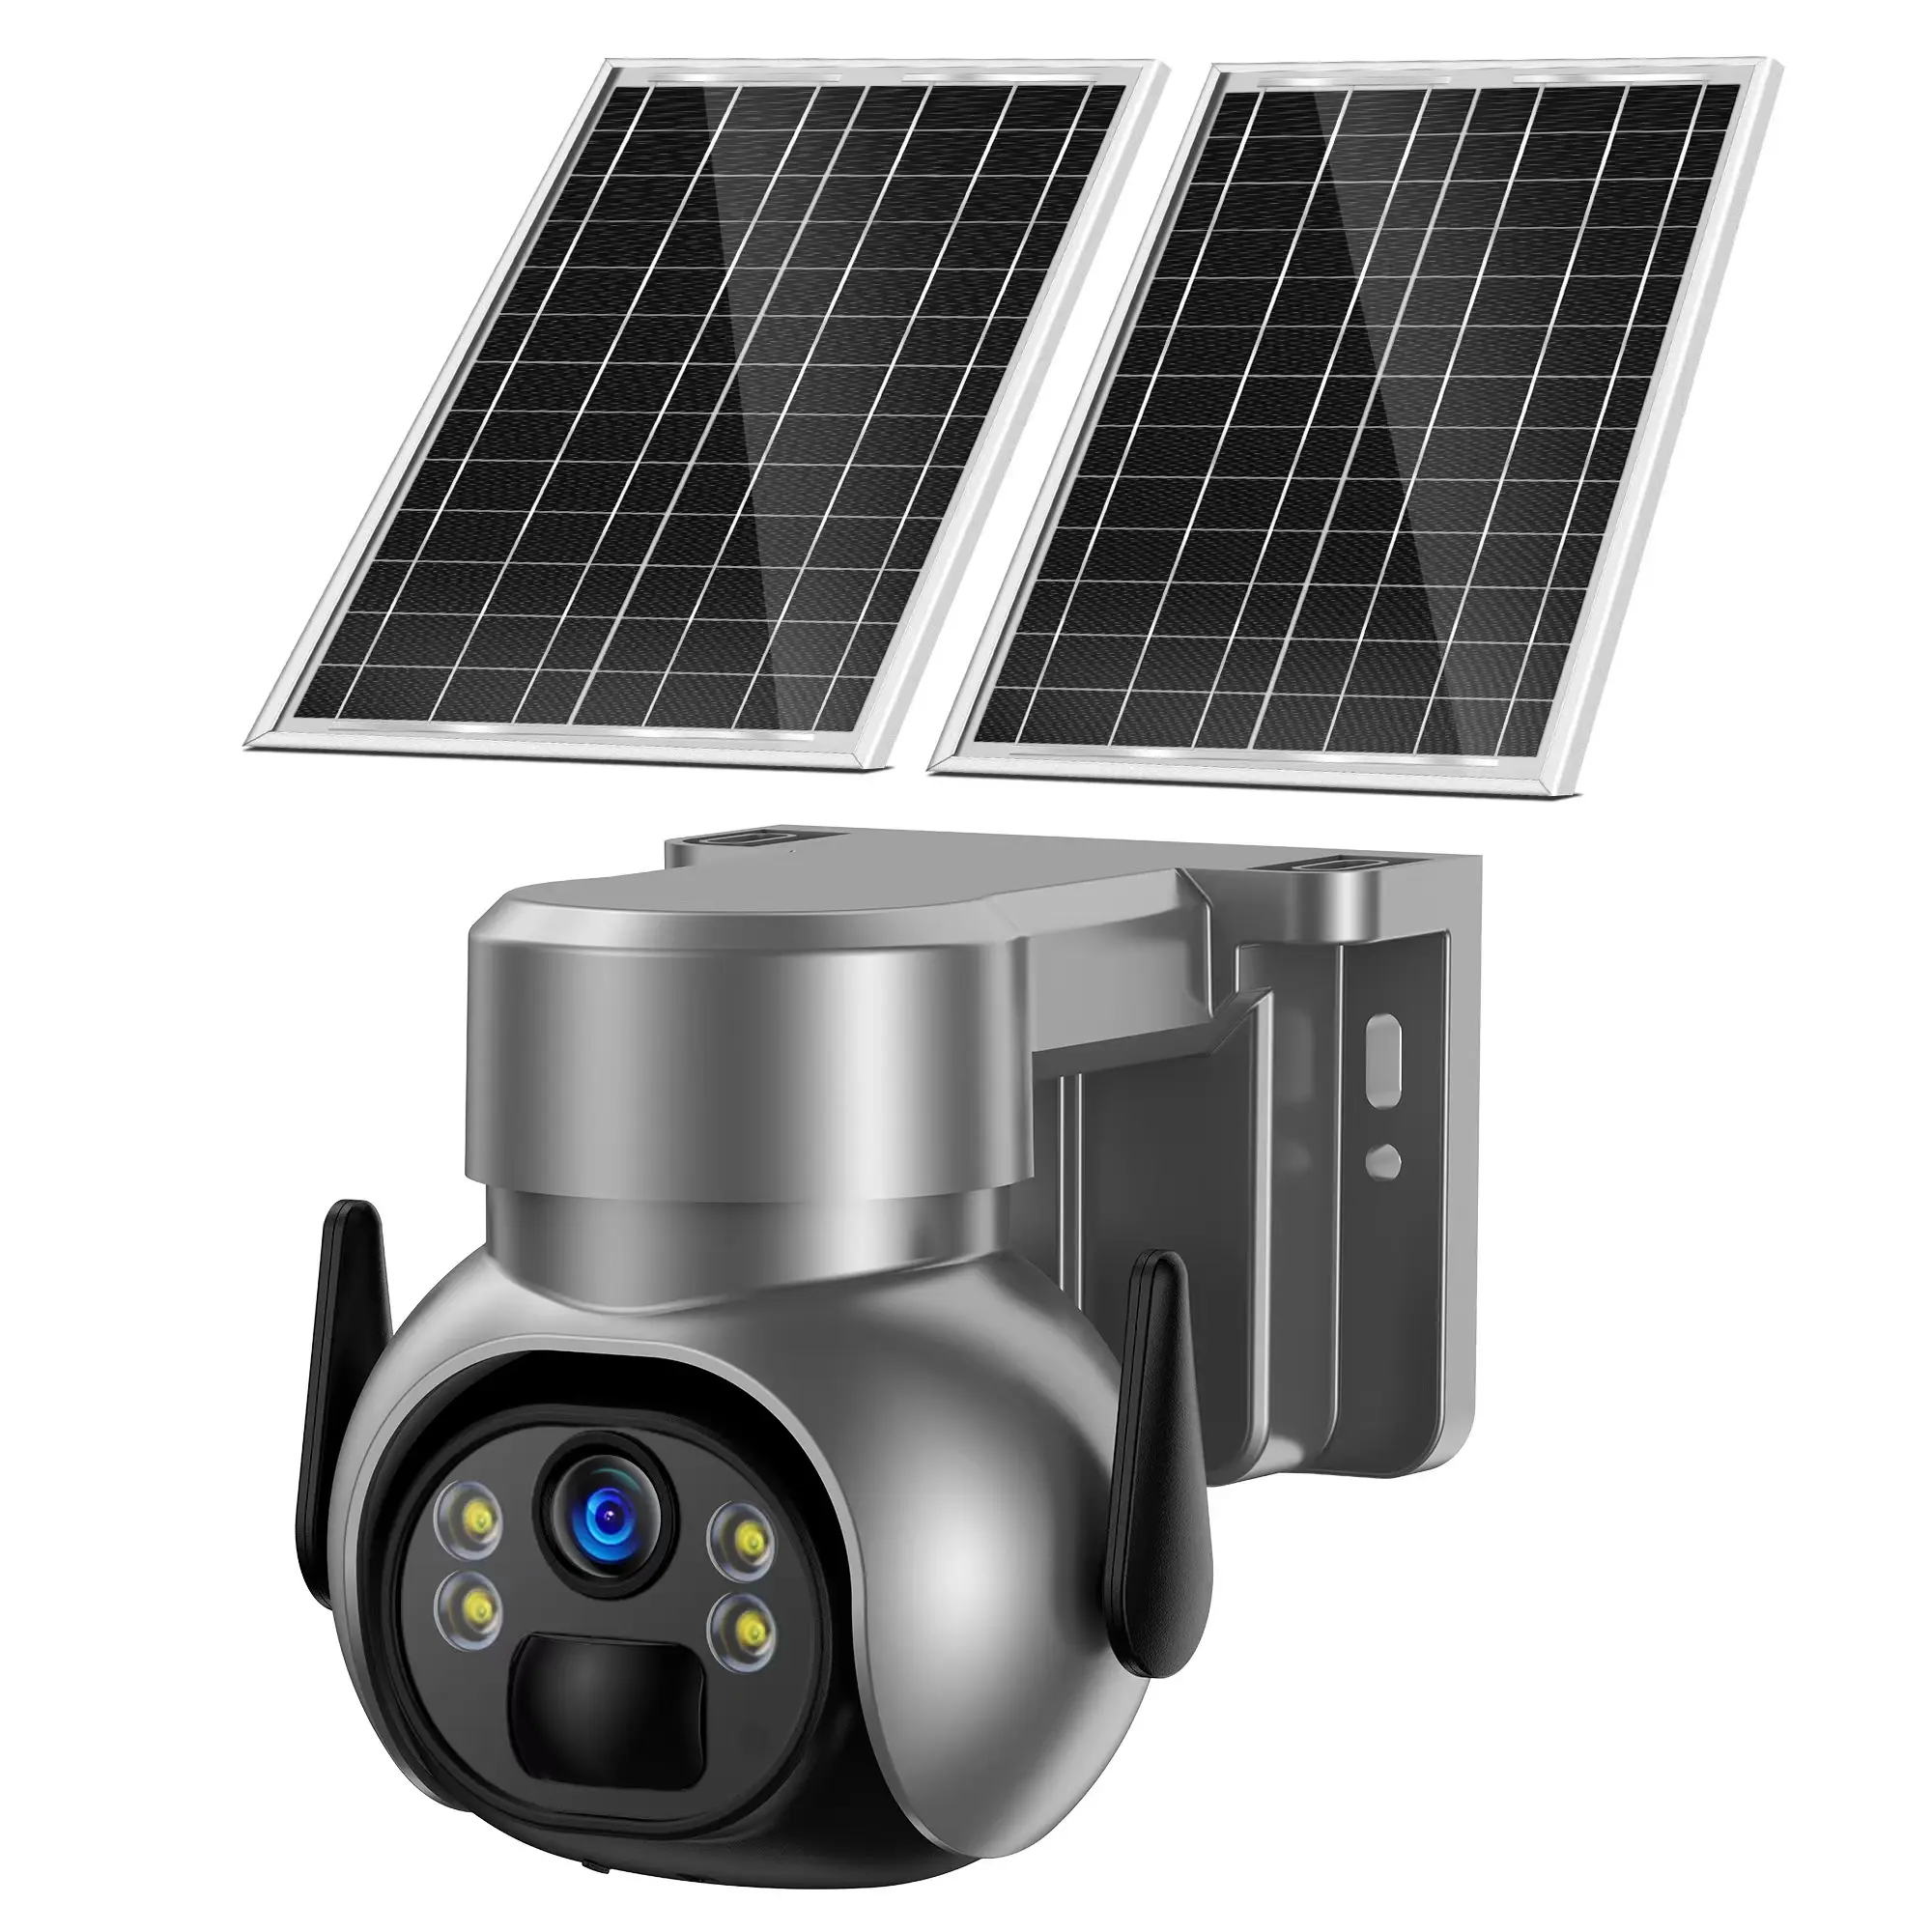 Regis 3MP 4G doppio pannello solare 24 ore registratore telecamera Cctv 4g Sim Card Gsm sicurezza telecamera solare esterna